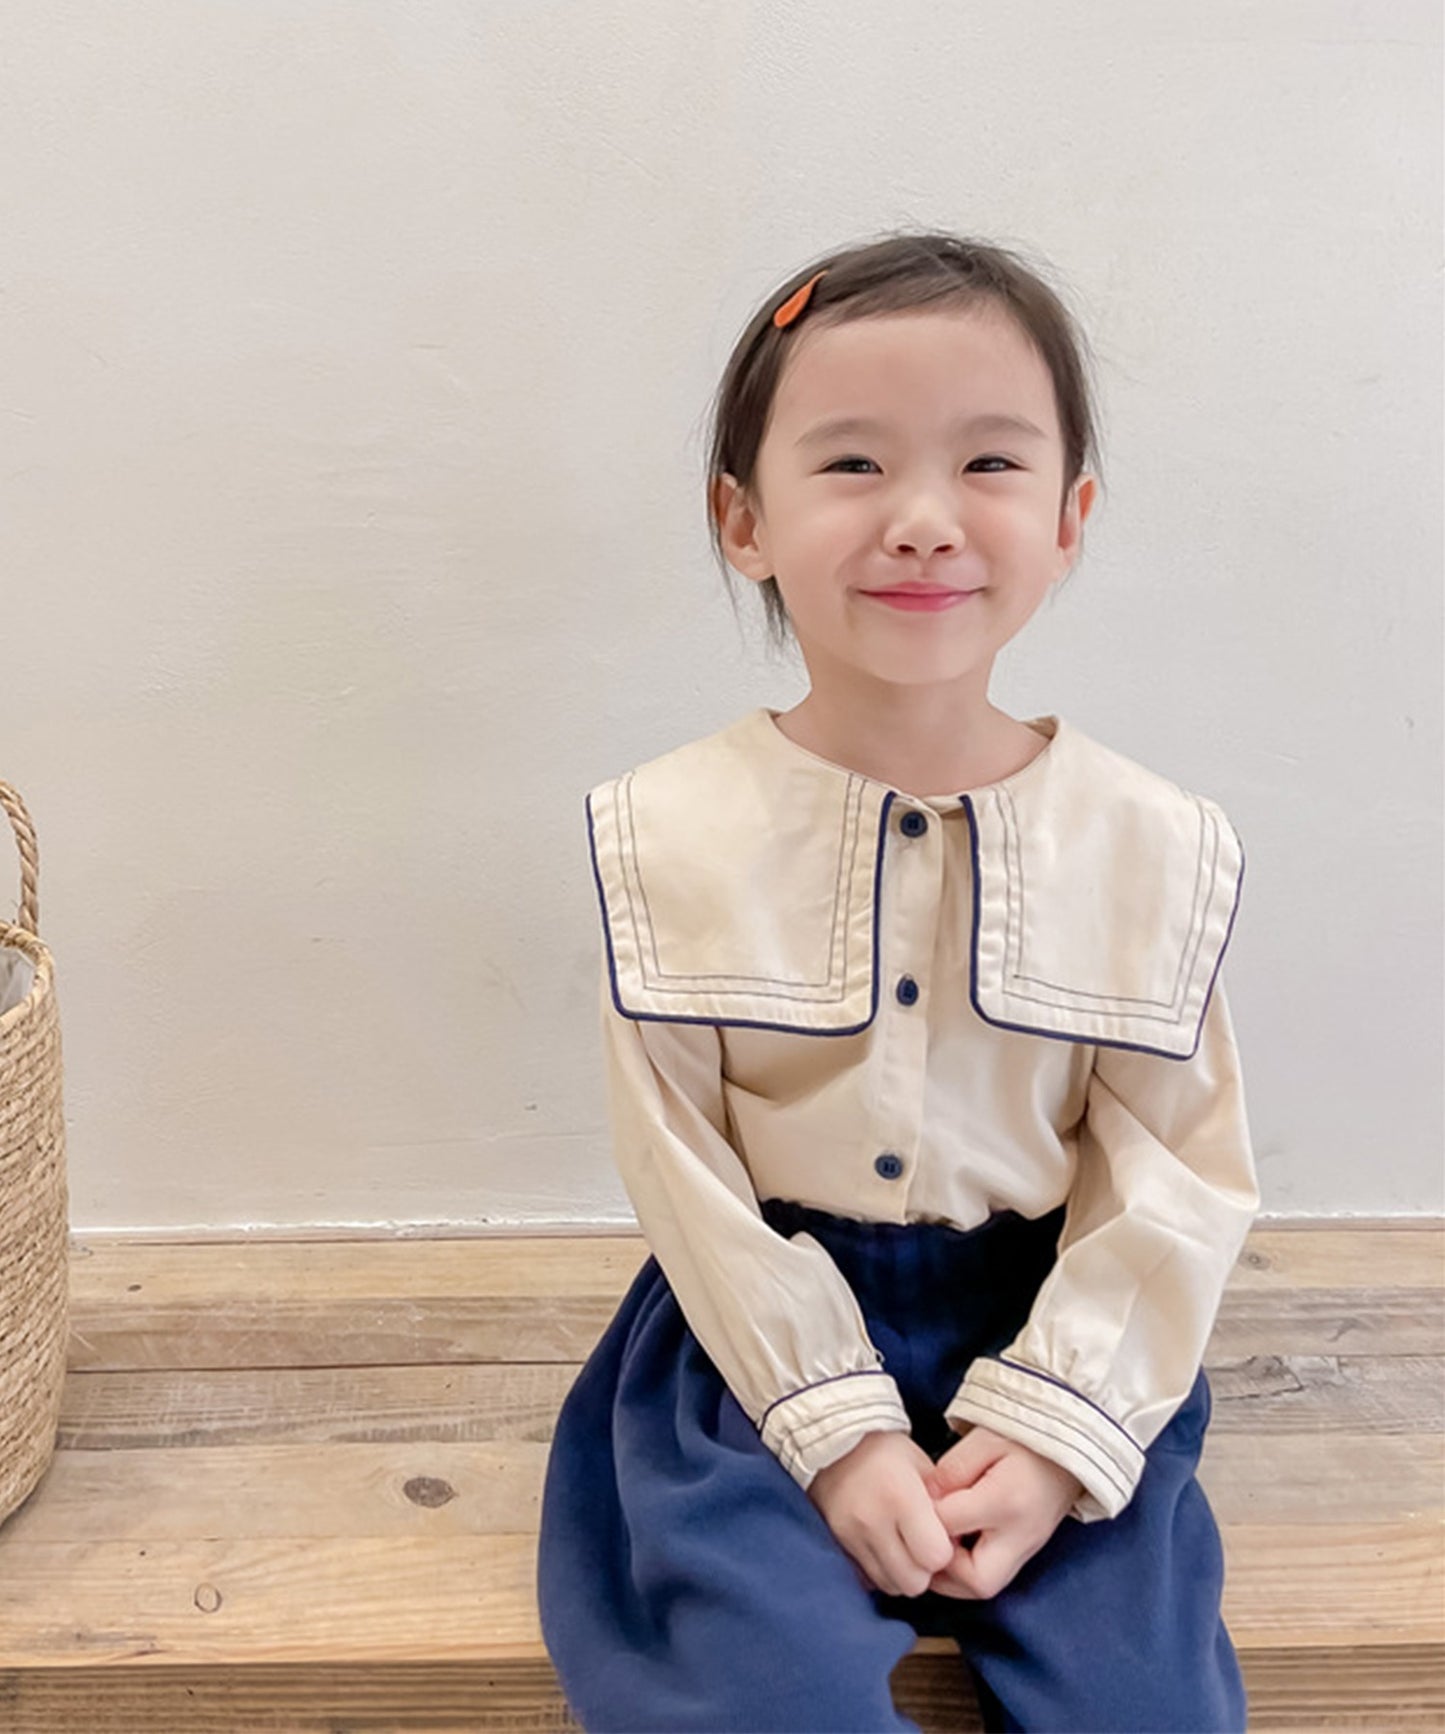 【aimoha-KIDS-】【新作】韓国子供服 かわいいセーラー服風ビッグカラーブラウス